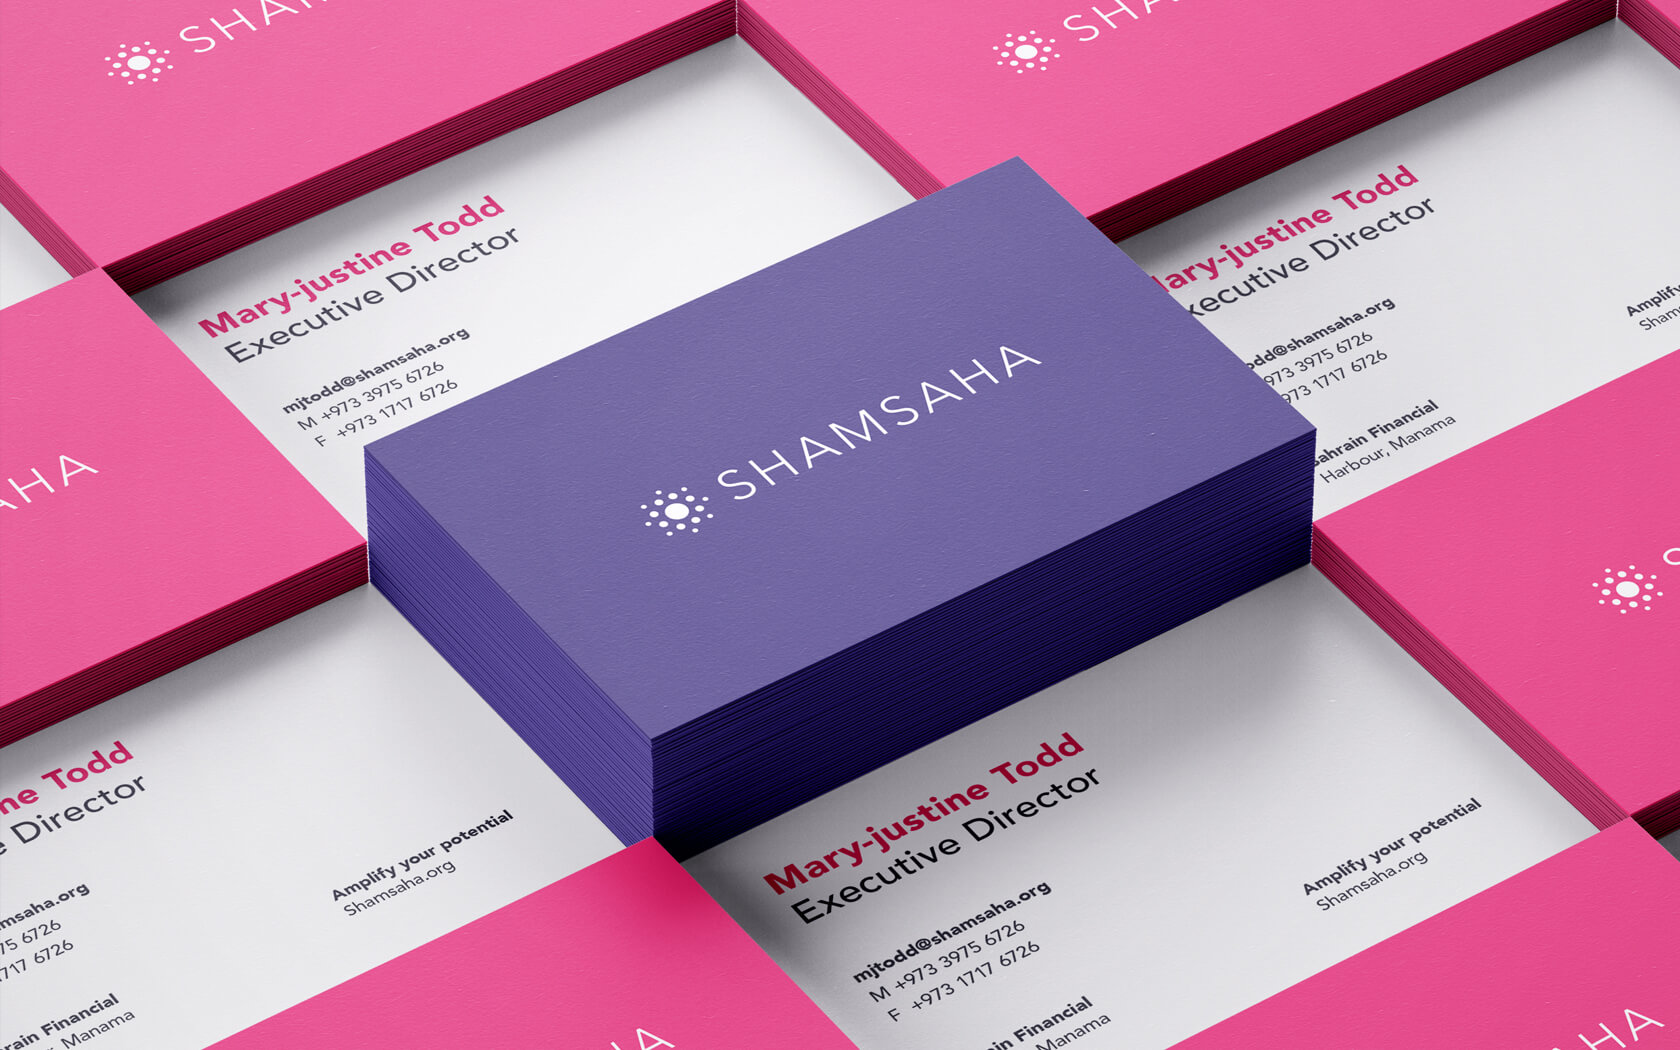 Shamsaha. Business Card examples